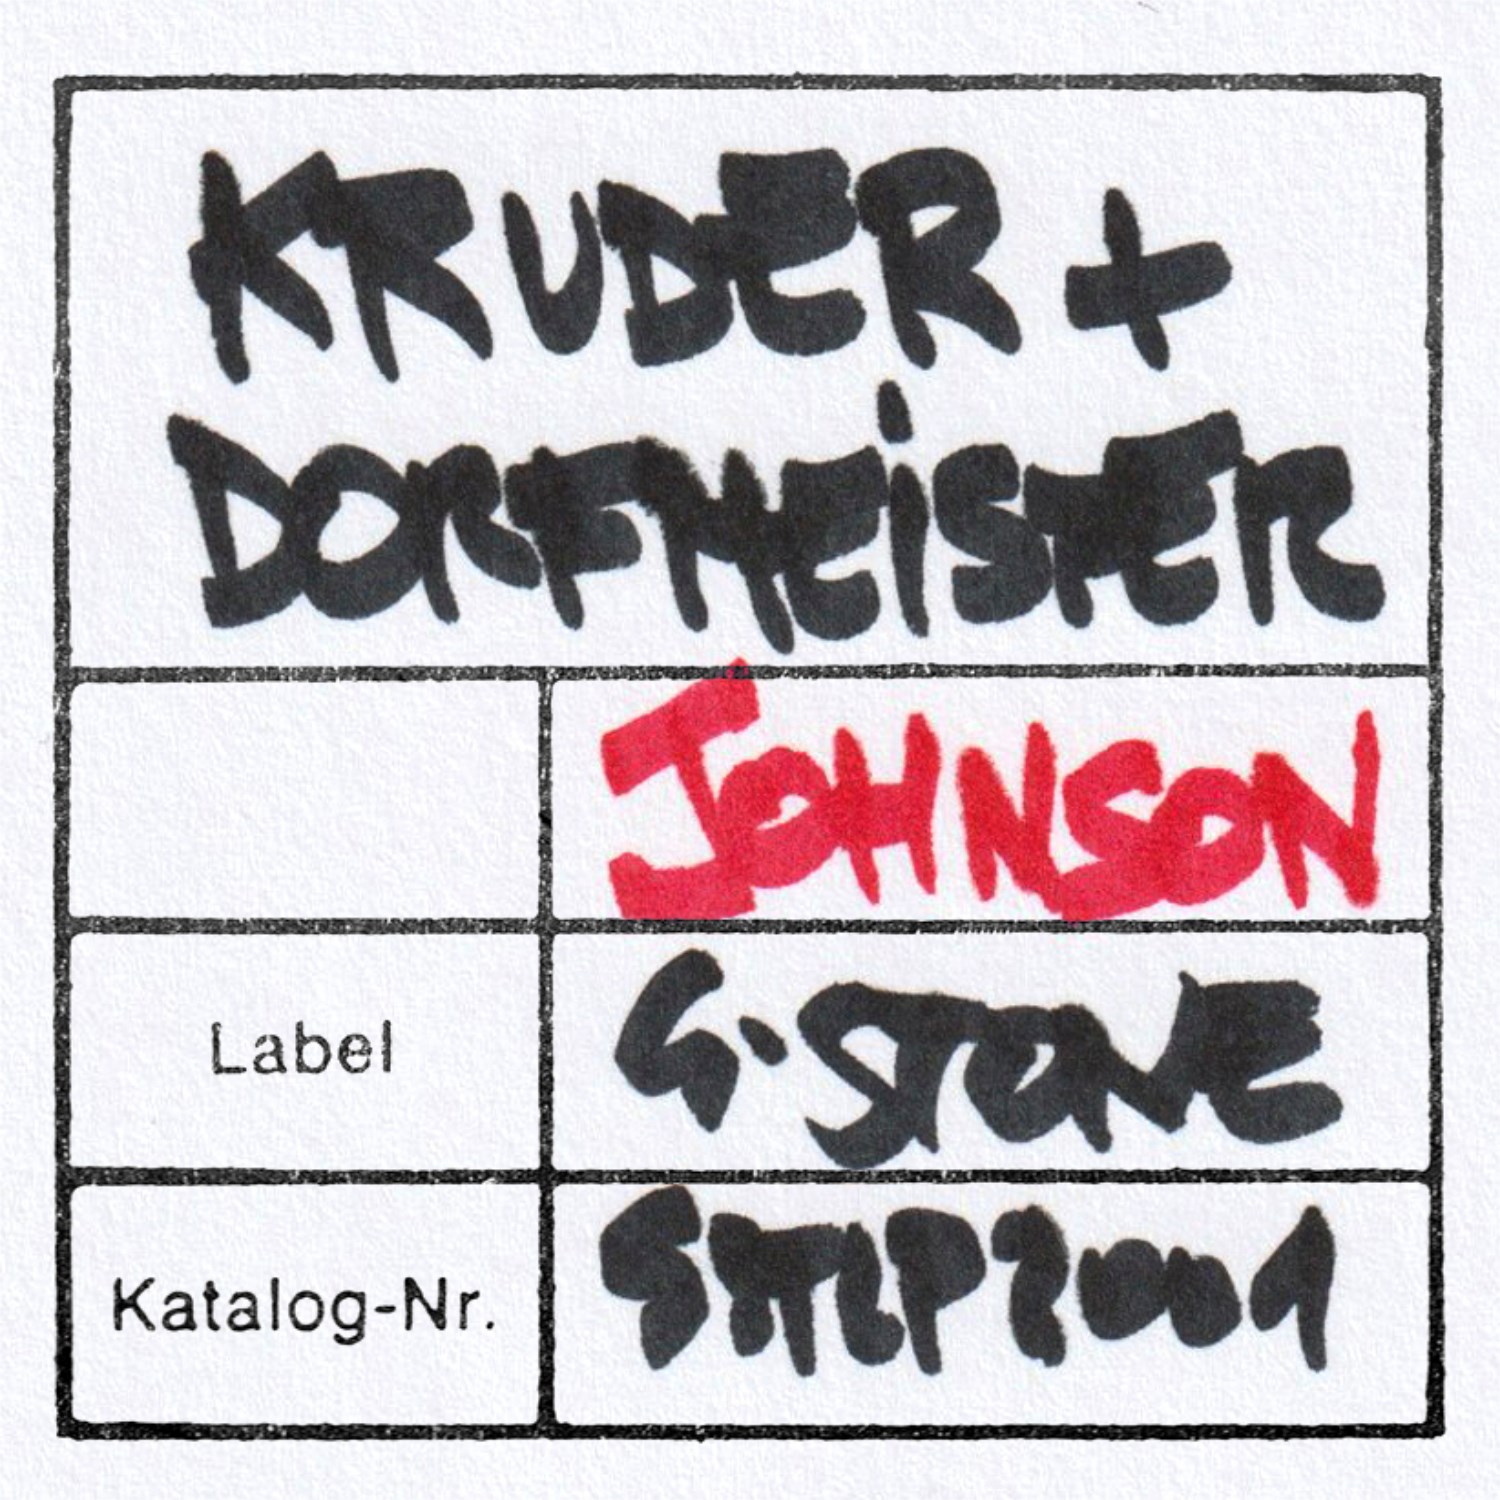 Kruder & Dorfmeisters Lost Album in den Startlöchern - "1995" | Heute starten wir mit der Single Johnson